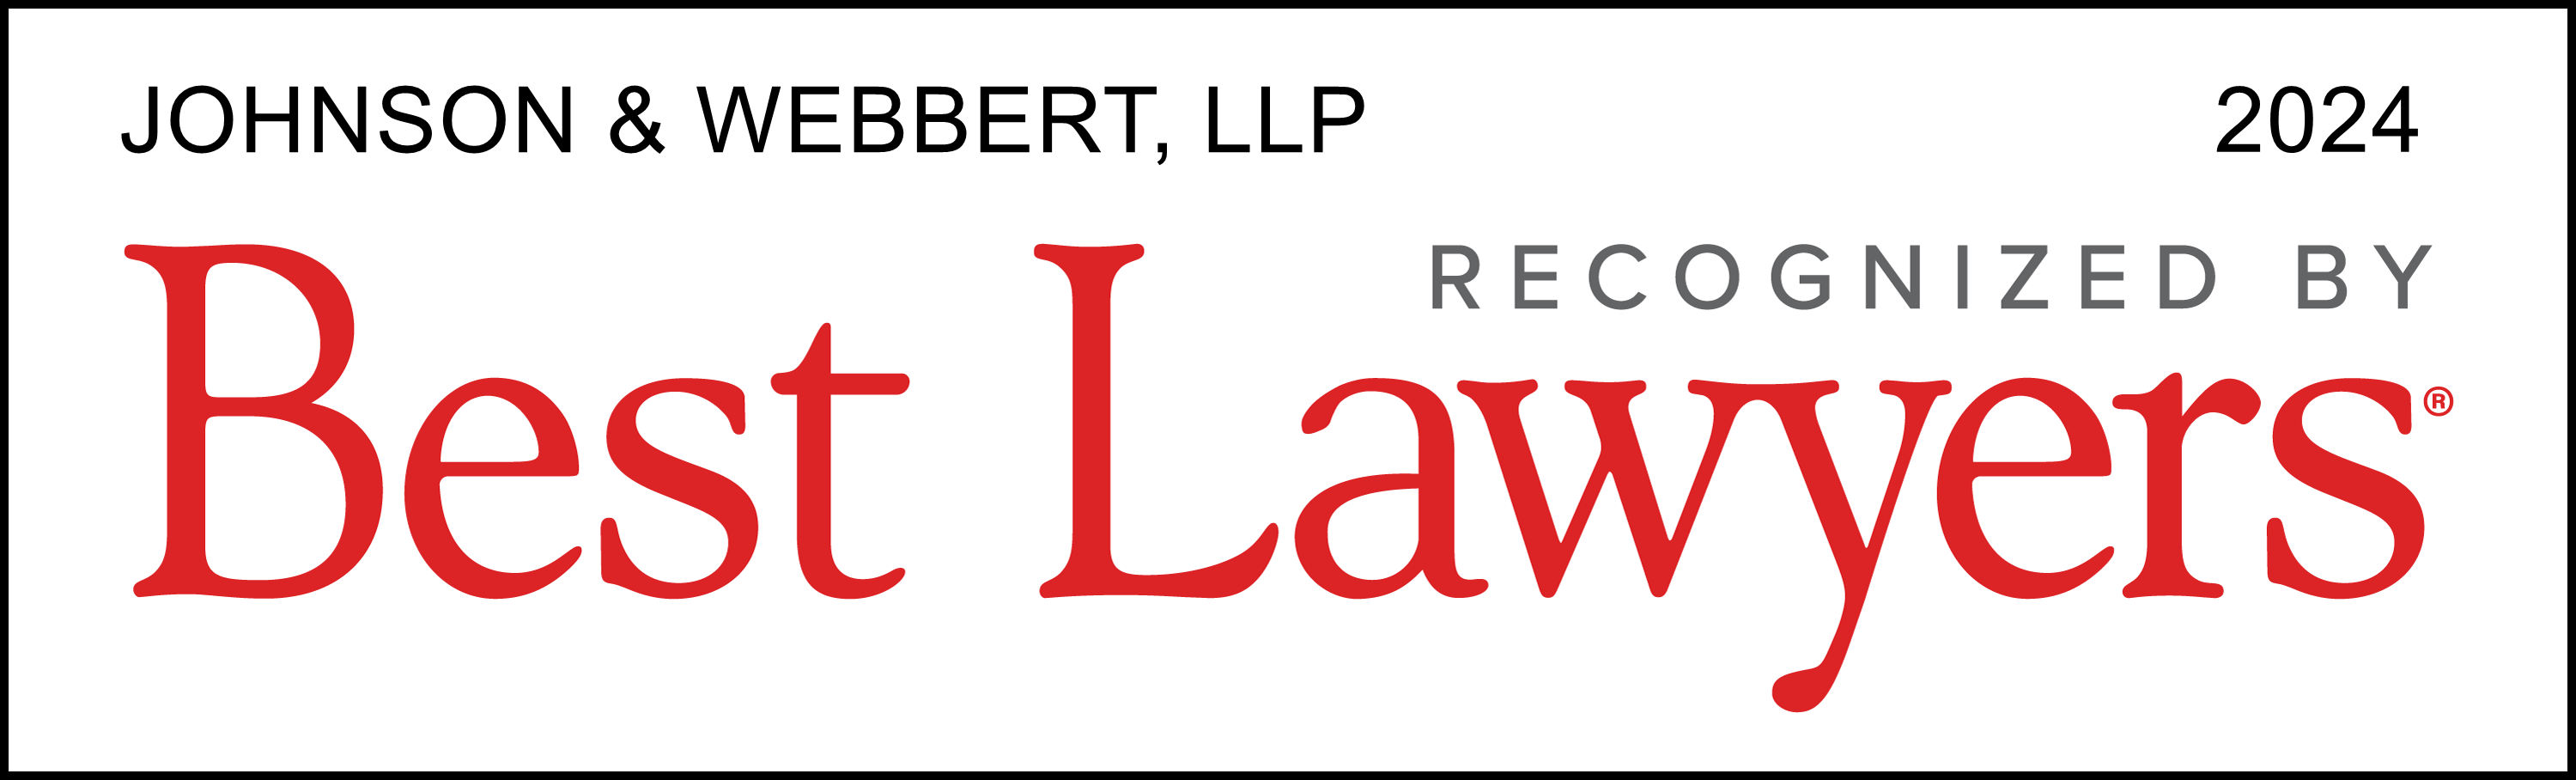 Johnson & Webbert, LLP Best Lawyers 2024